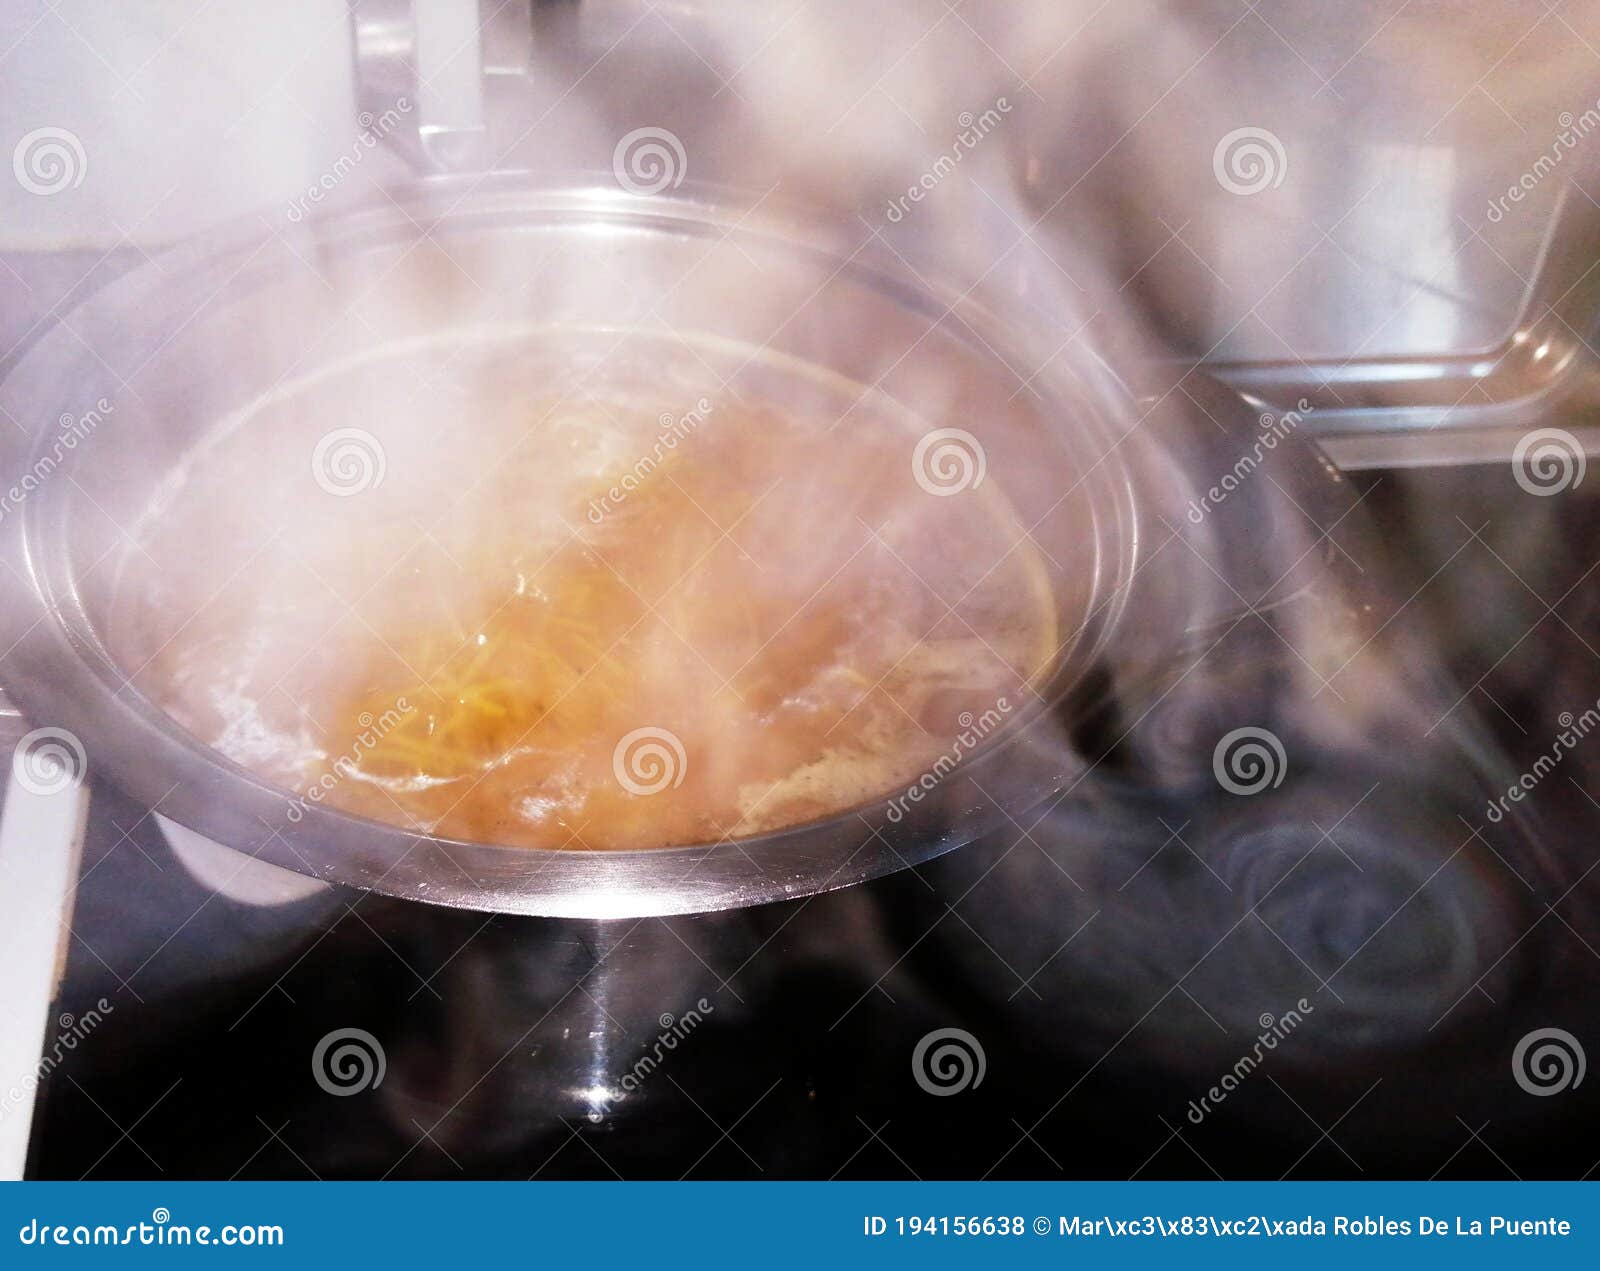 vapor de una olla de sopa de fideos